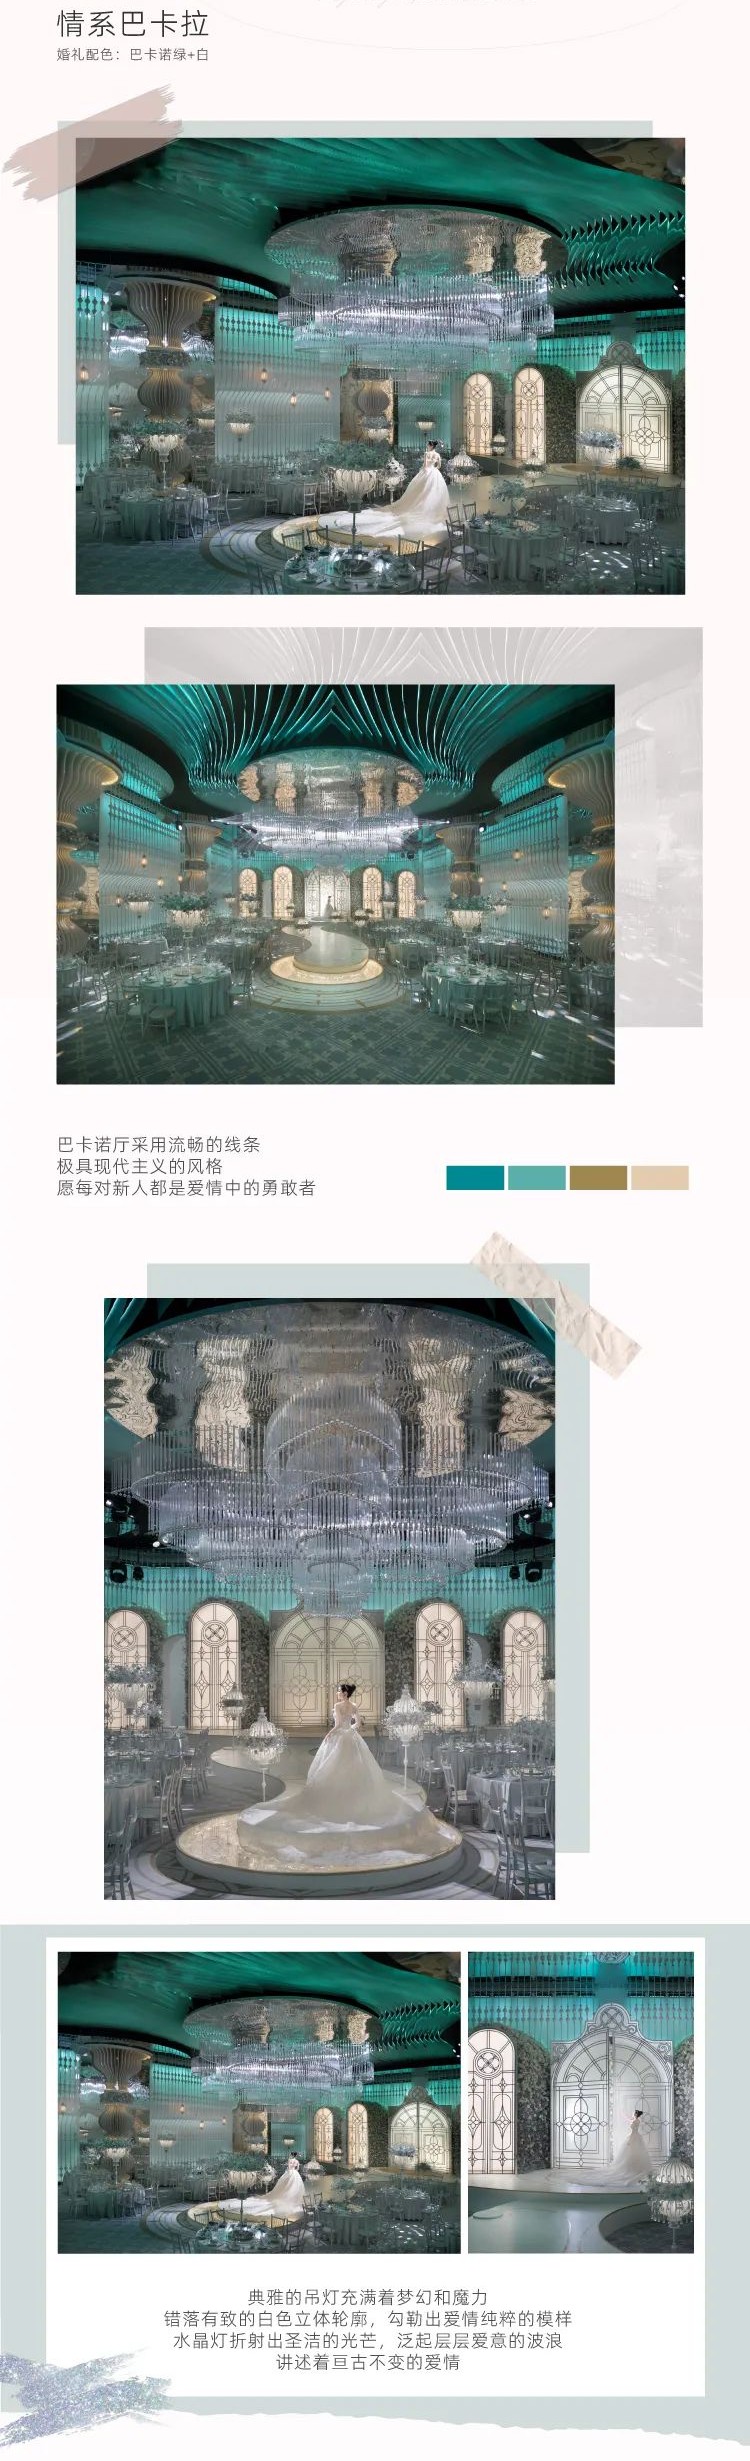 婚礼堂发布：上海摩可纳6大宴会厅亮相  第6张